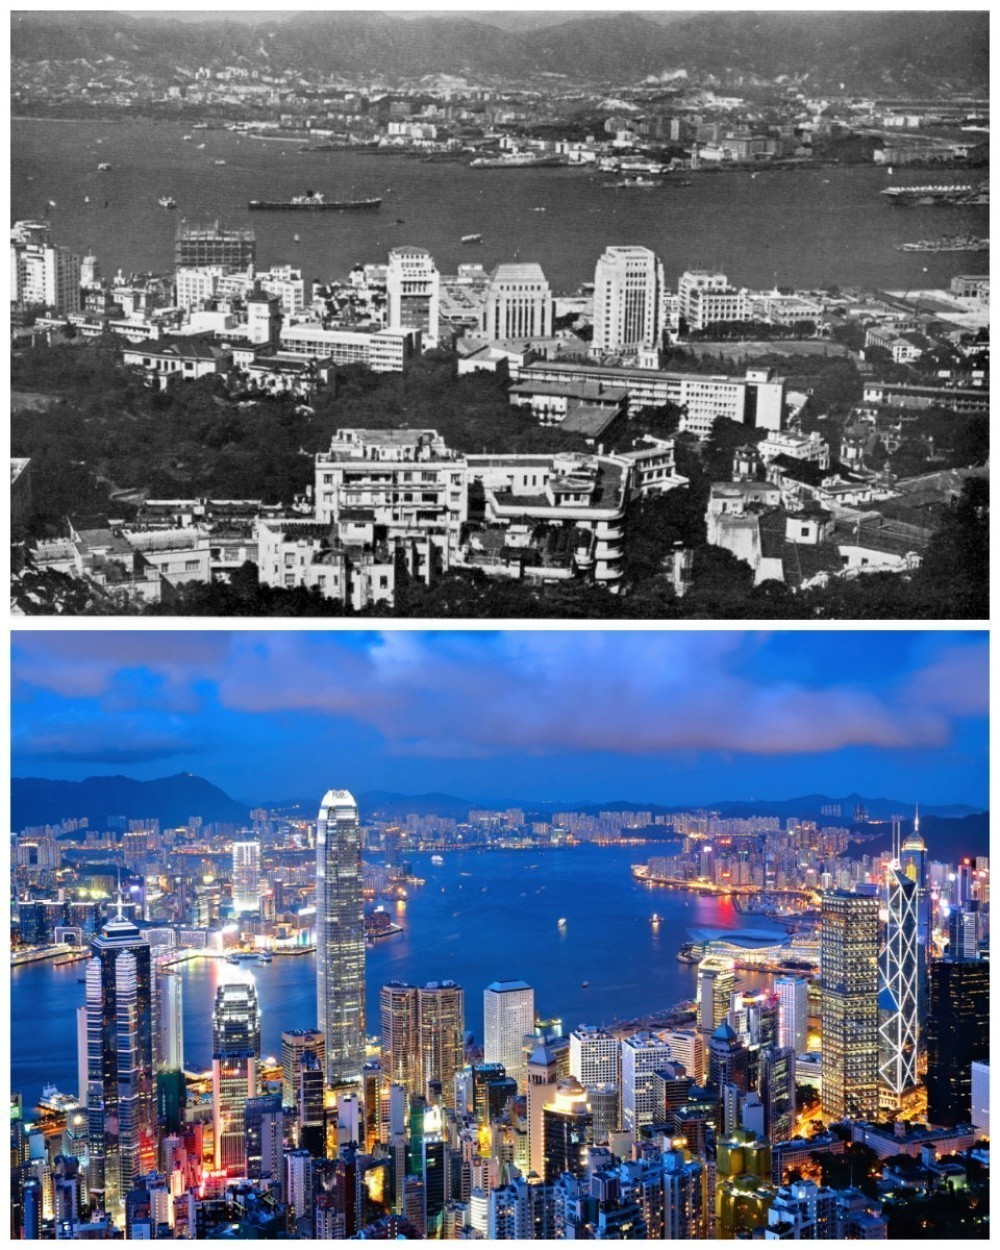 Χονγκ Κονγκ: Το 1960 και Σήμερα